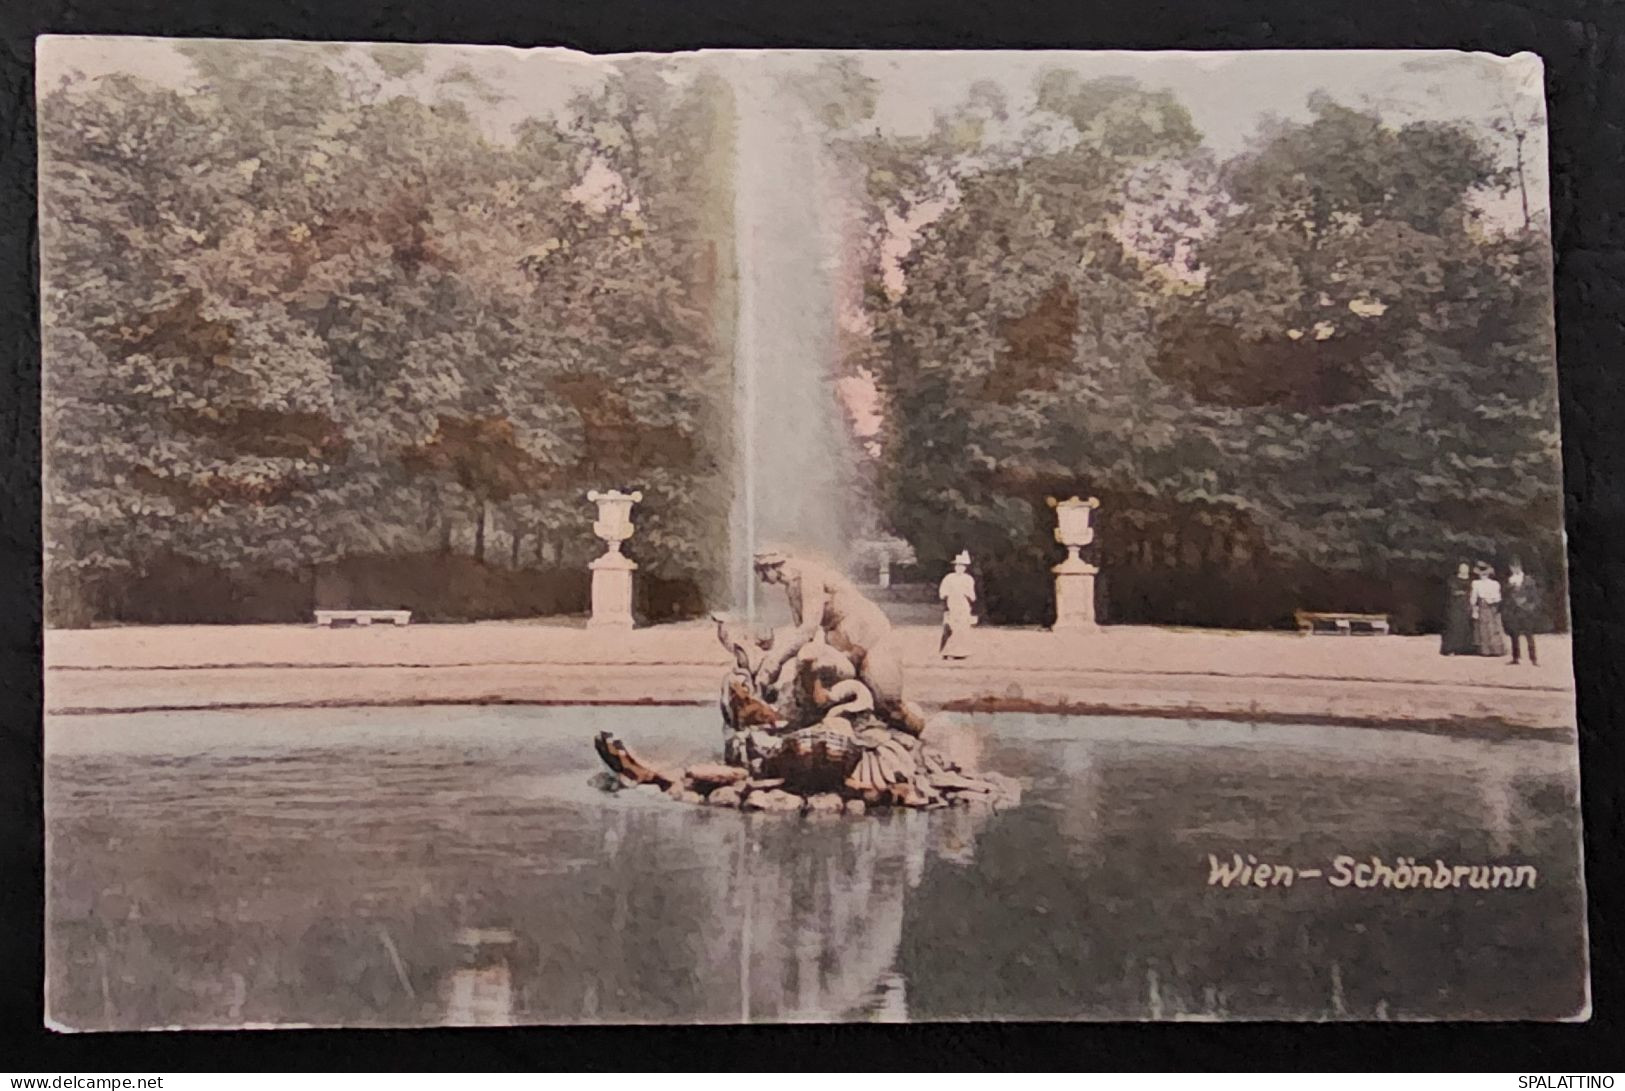 WIEN 1907. - Schönbrunn Palace